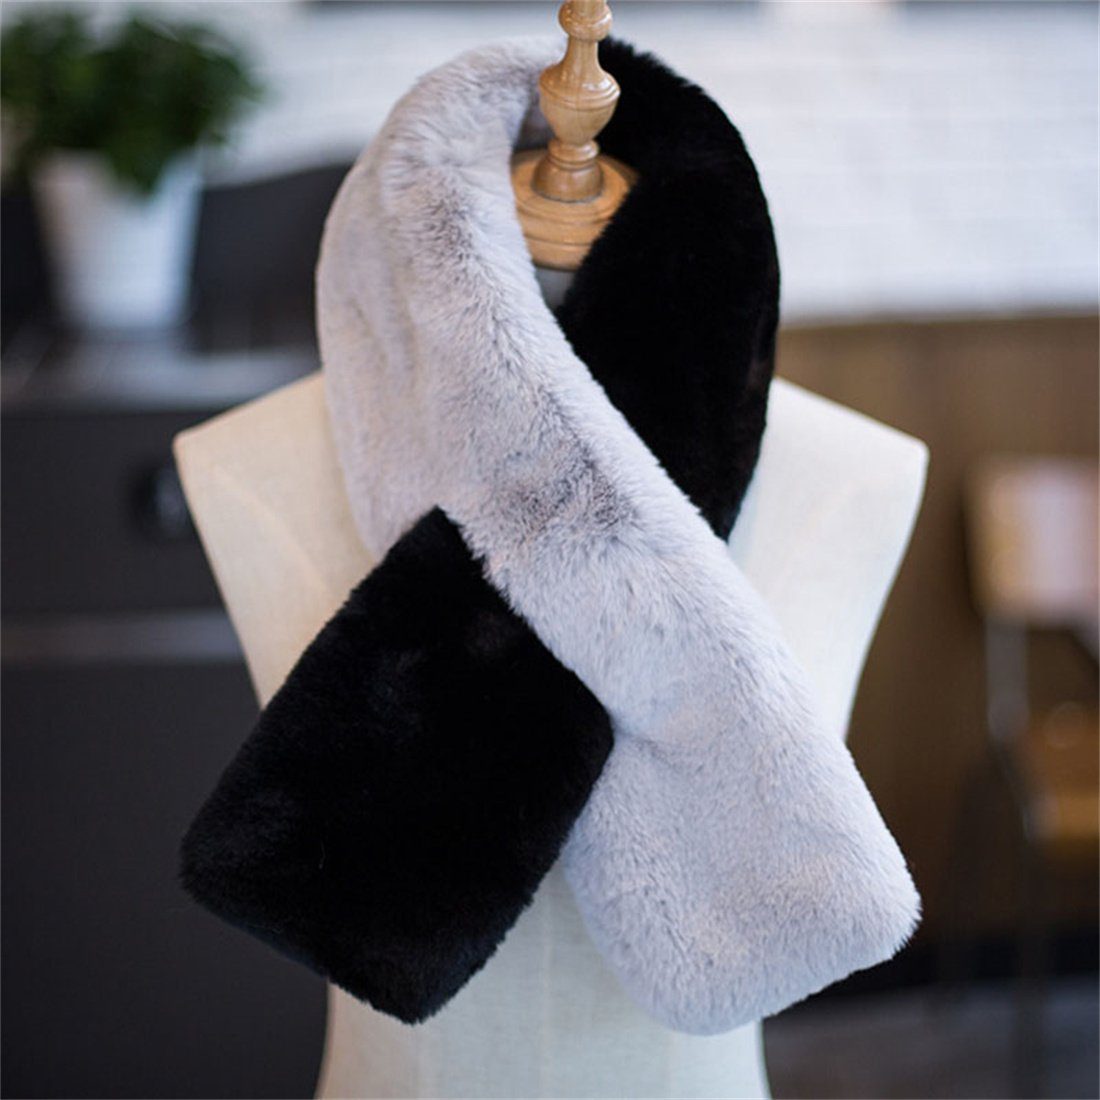 Damen Wintermode Rosa Nachahmung DÖRÖY verdickt warmen Schal Pelz Modeschal Schal,